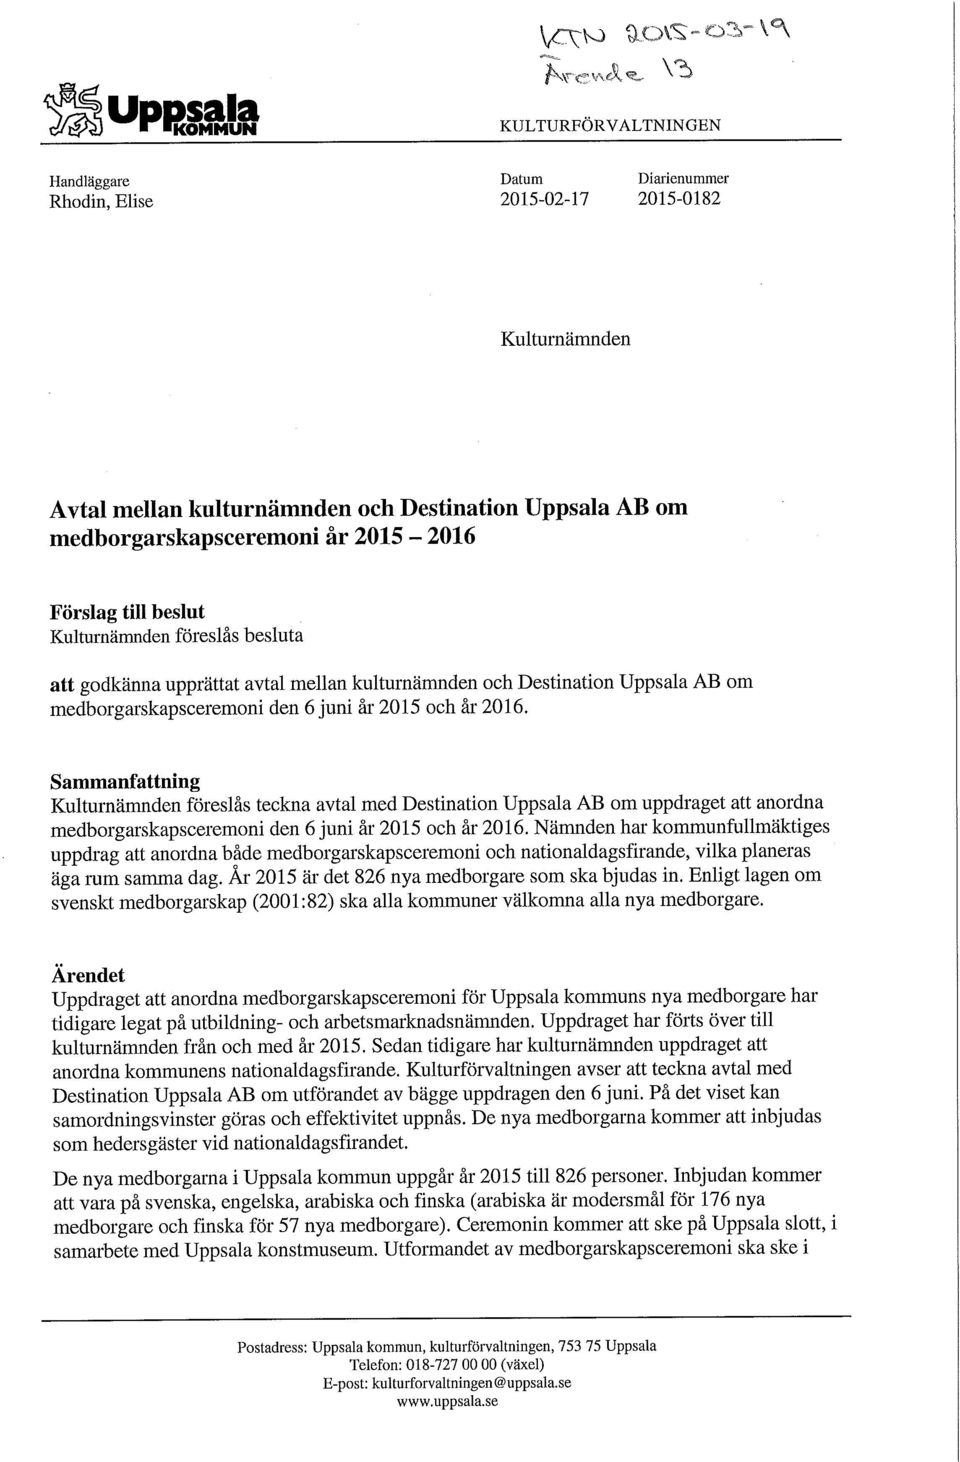 Sammanfattning Kulturnämnden föreslås teckna avtal med Destination Uppsala AB om uppdraget att anordna medborgarskapsceremoni den 6 juni år 2015 och år 2016.